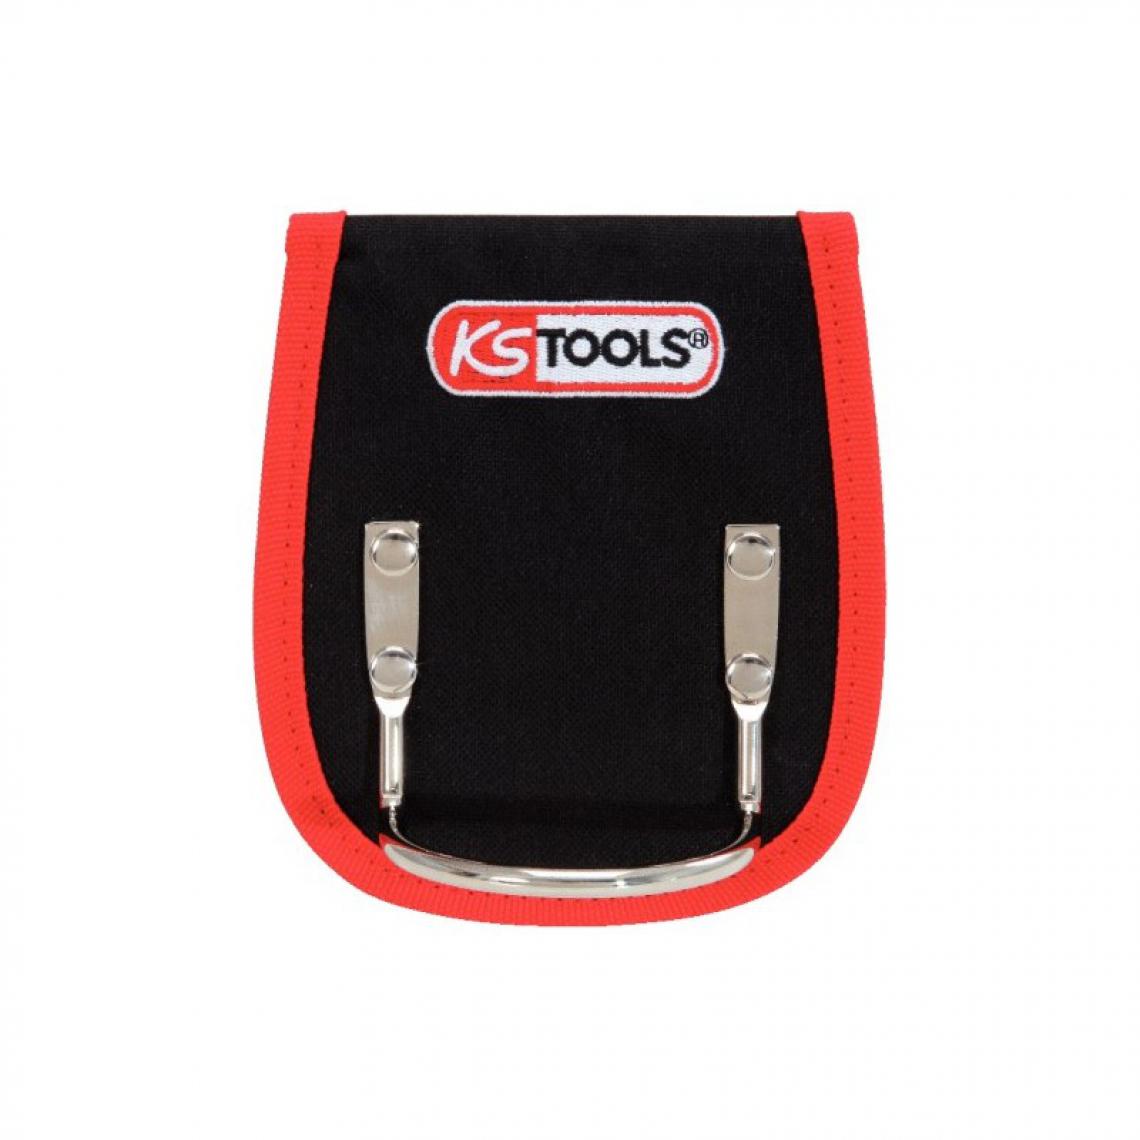 Ks Tools - KS TOOLS 850.0304 Porte marteaux avec passant - Packs d'outillage électroportatif